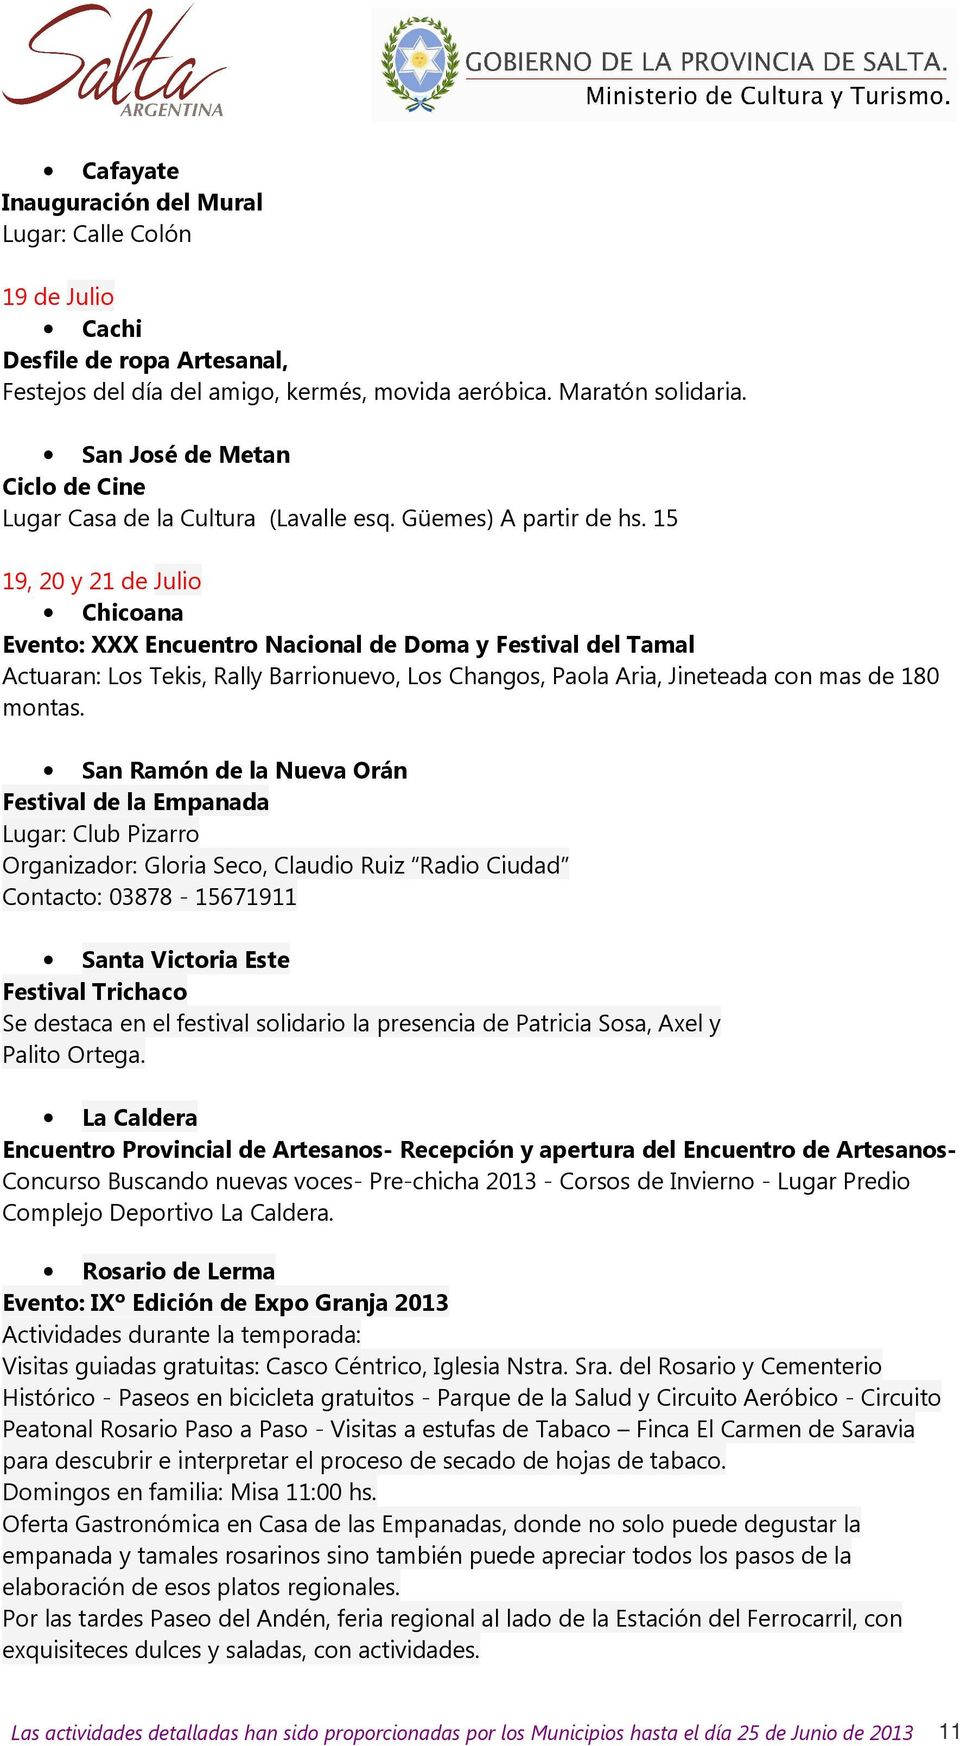 15 19, 20 y 21 de Julio Chicoana Evento: XXX Encuentro Nacional de Doma y Festival del Tamal Actuaran: Los Tekis, Rally Barrionuevo, Los Changos, Paola Aria, Jineteada con mas de 180 montas.